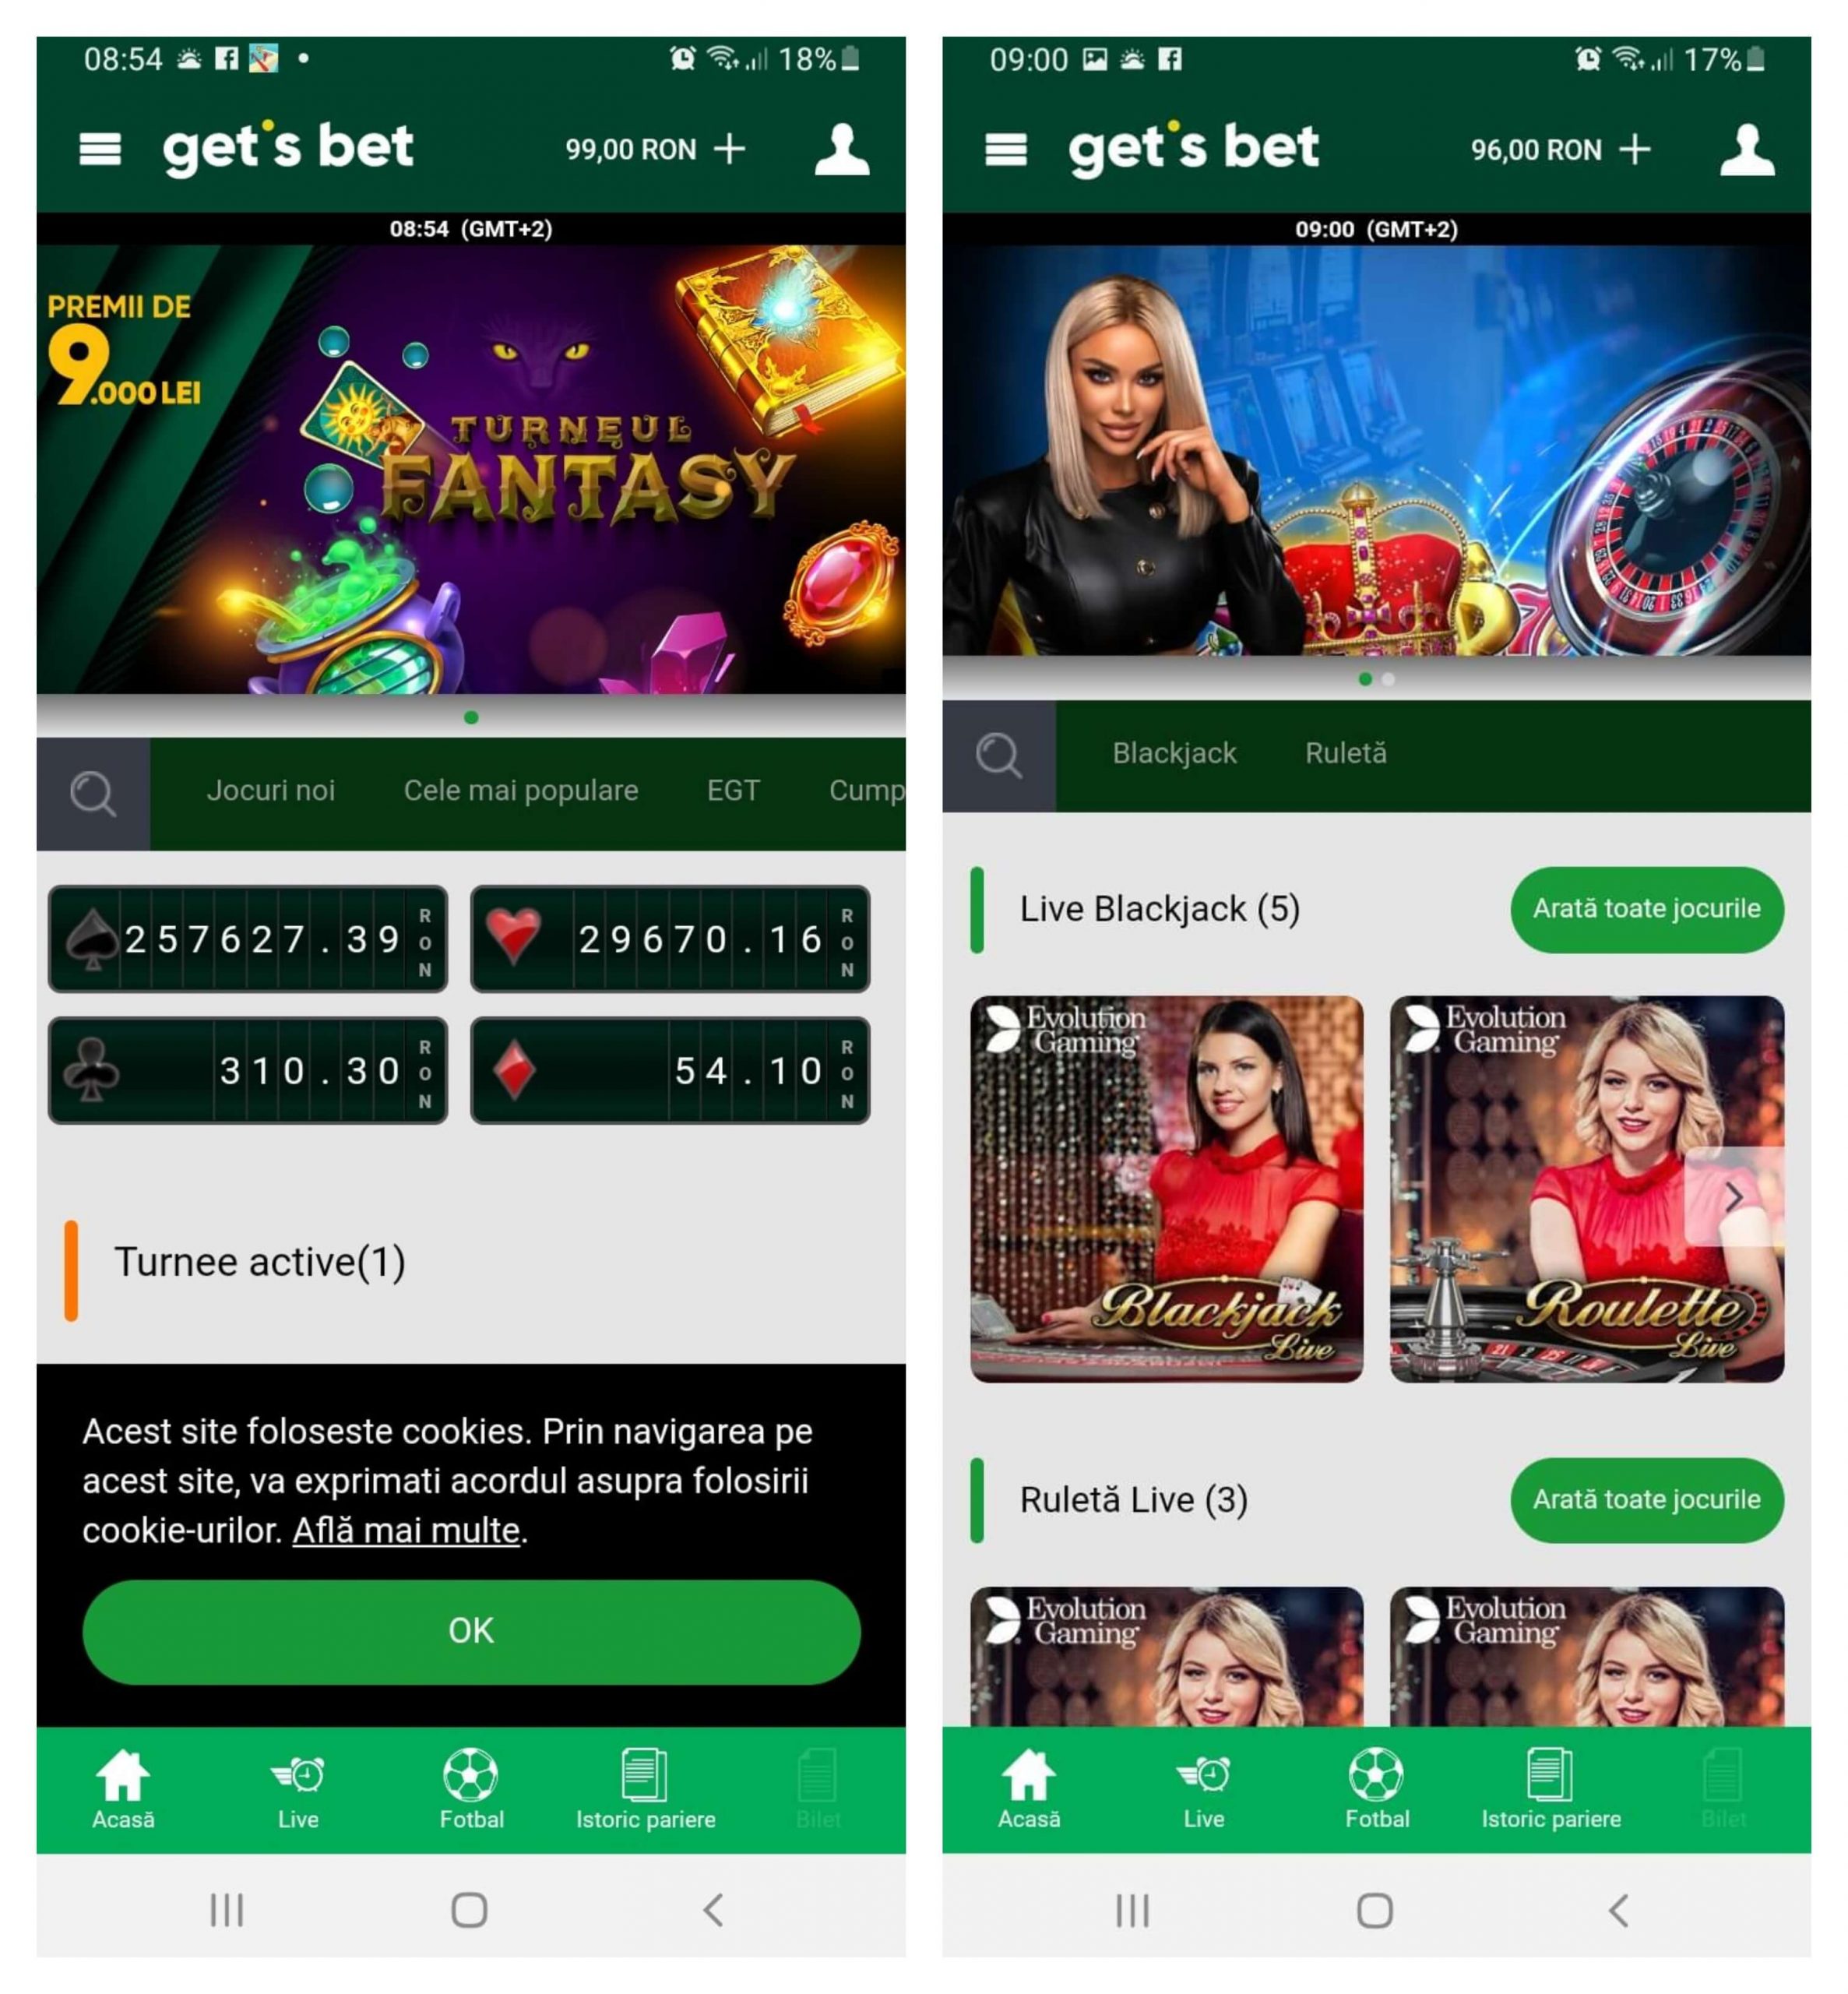 Jocuri și pariuri în aplicația Get’s Bet